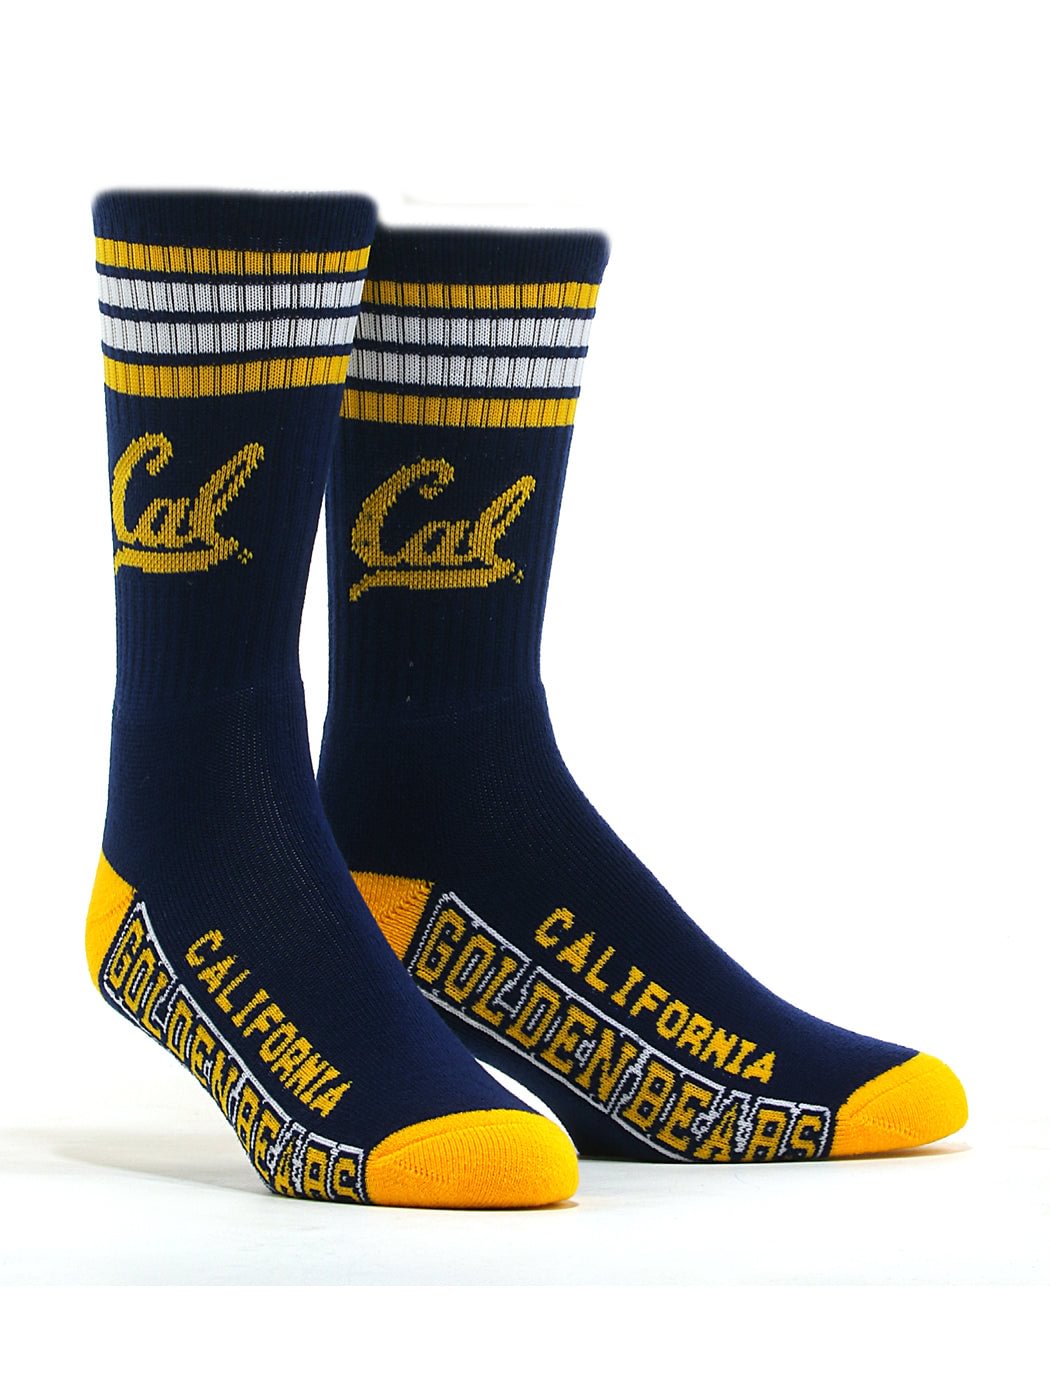 Men's California Berkeley Socks Zaesvini